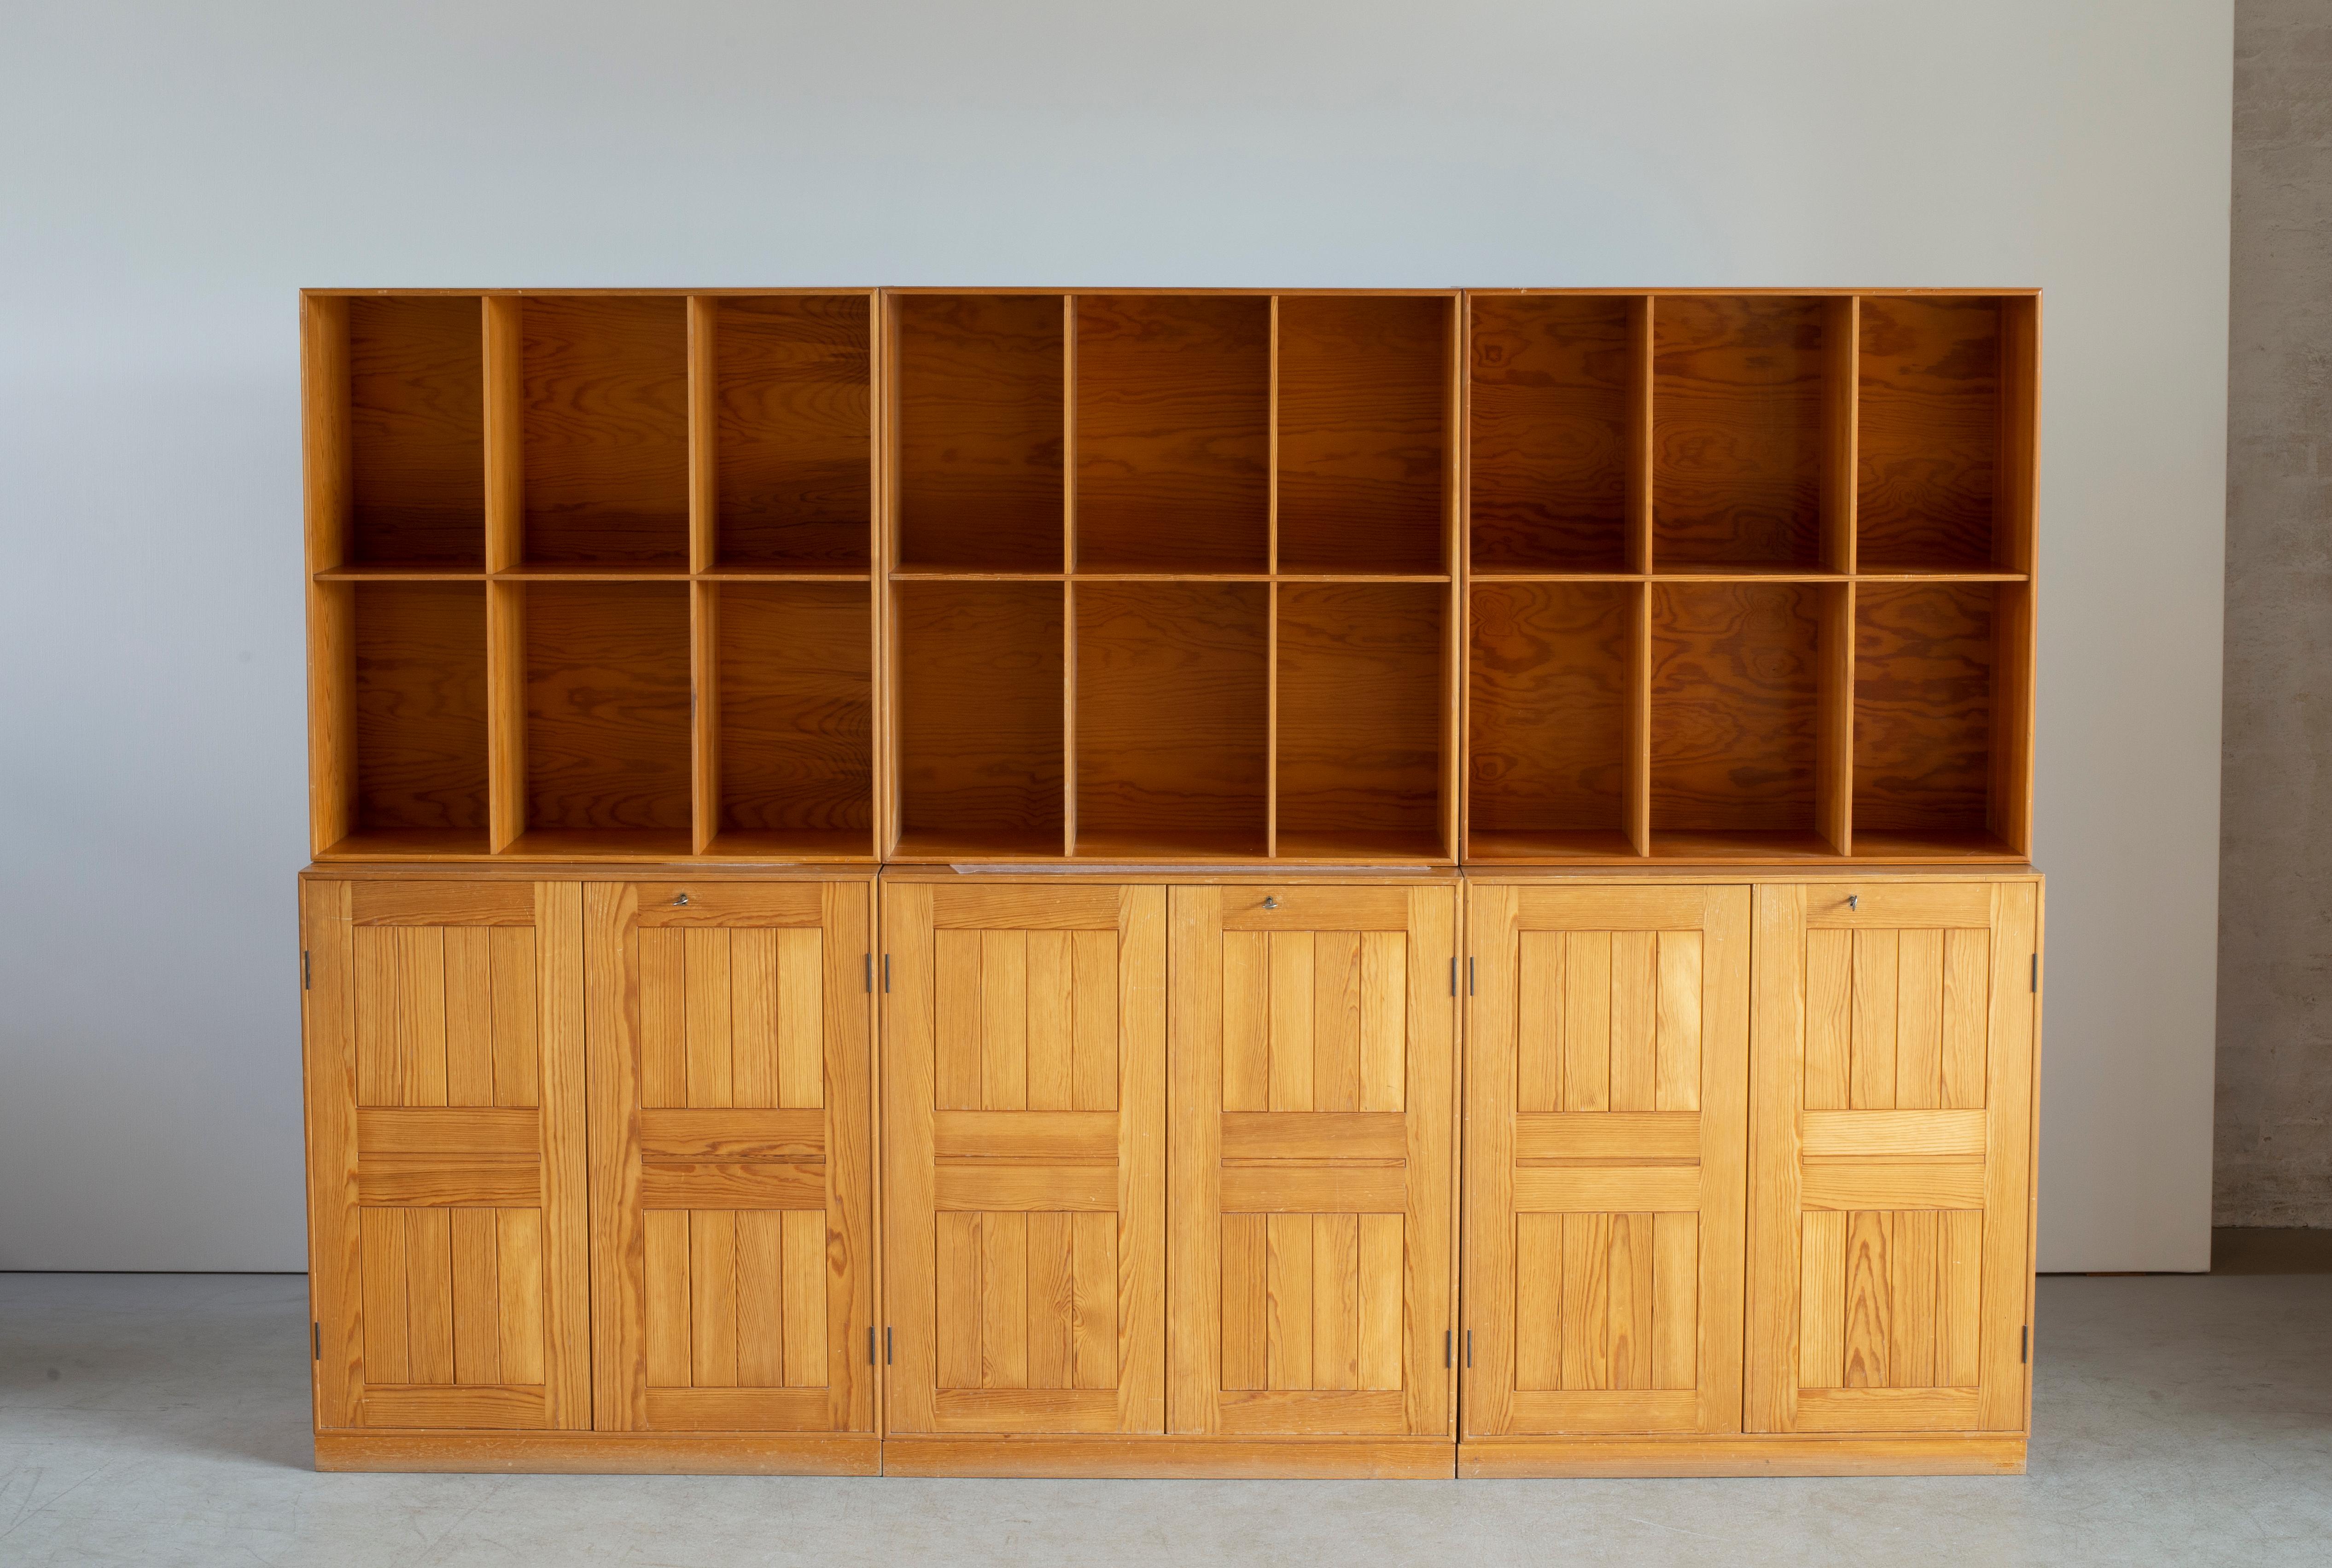 Mueble alto de pino Mogens Koch compuesto por tres armarios con tres zócalos a juego y tres librerías. Ejecutado por Rud. Rasmussen, Copenhague.

Reverso con etiquetas de papel 